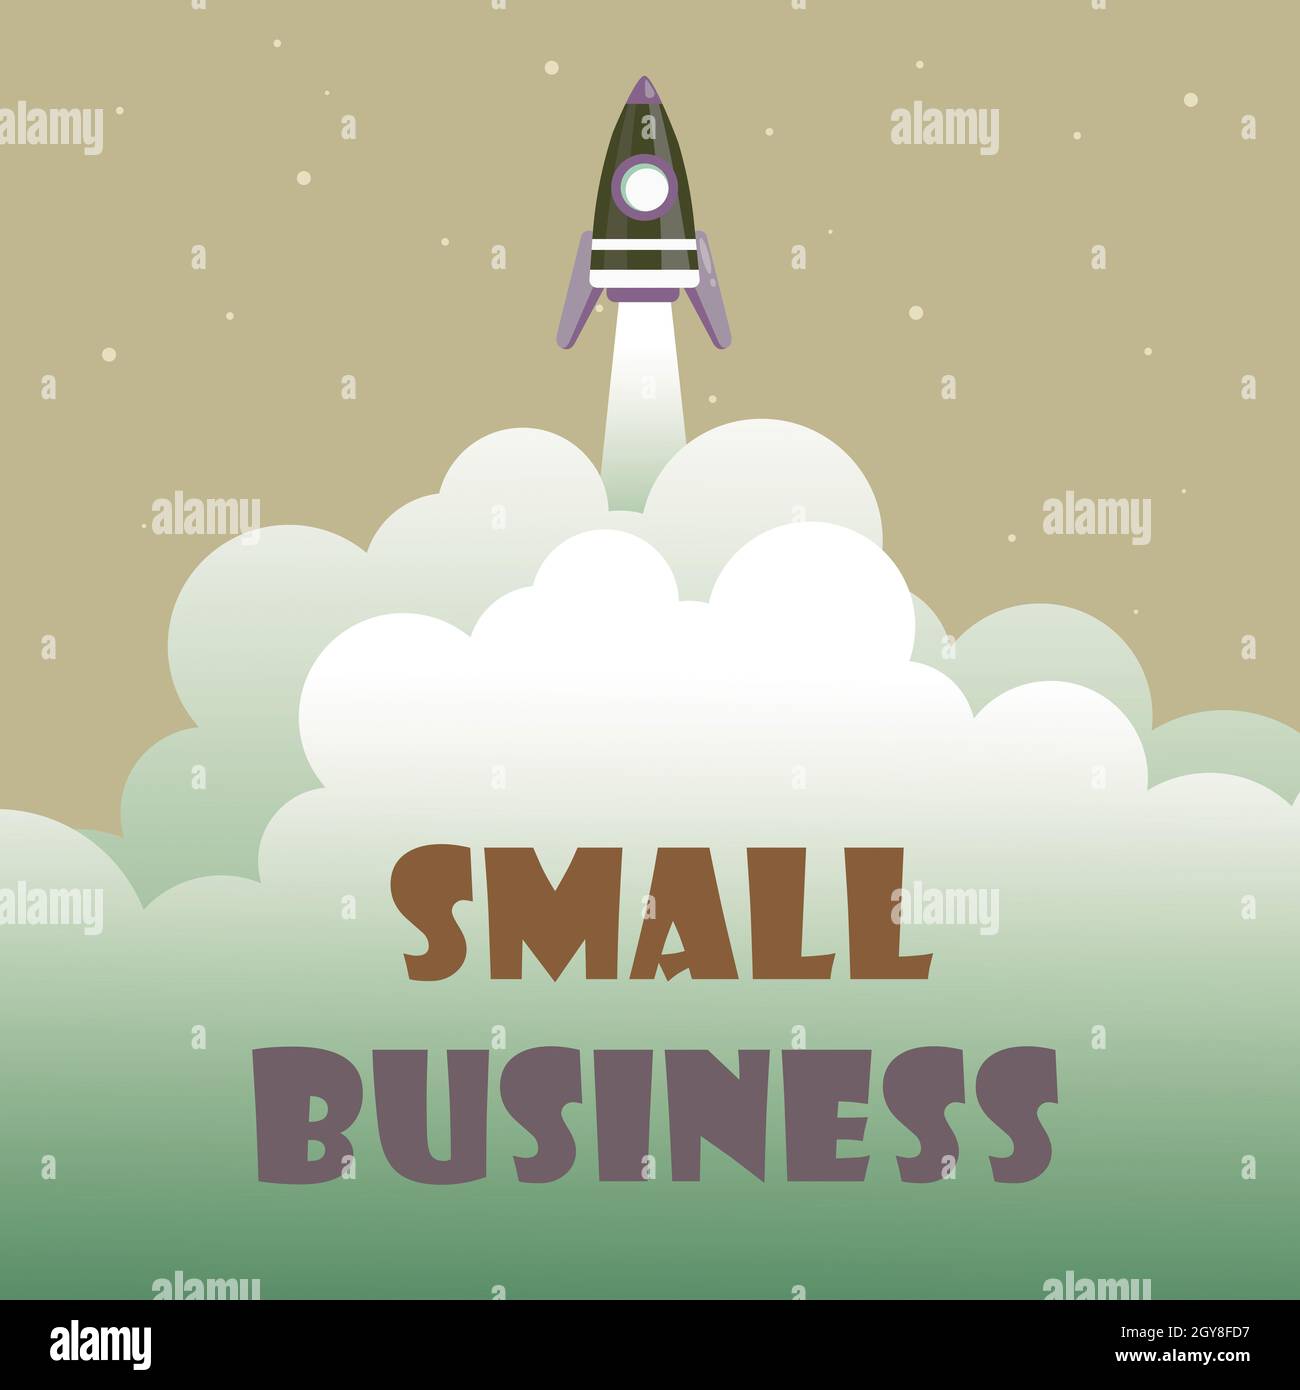 Textunterschrift Präsentation von Small Business, Business Showcase Rocket S, ein Unternehmen im Privatbesitz, das für seine begrenzte Größe bekannt ist Stockfoto